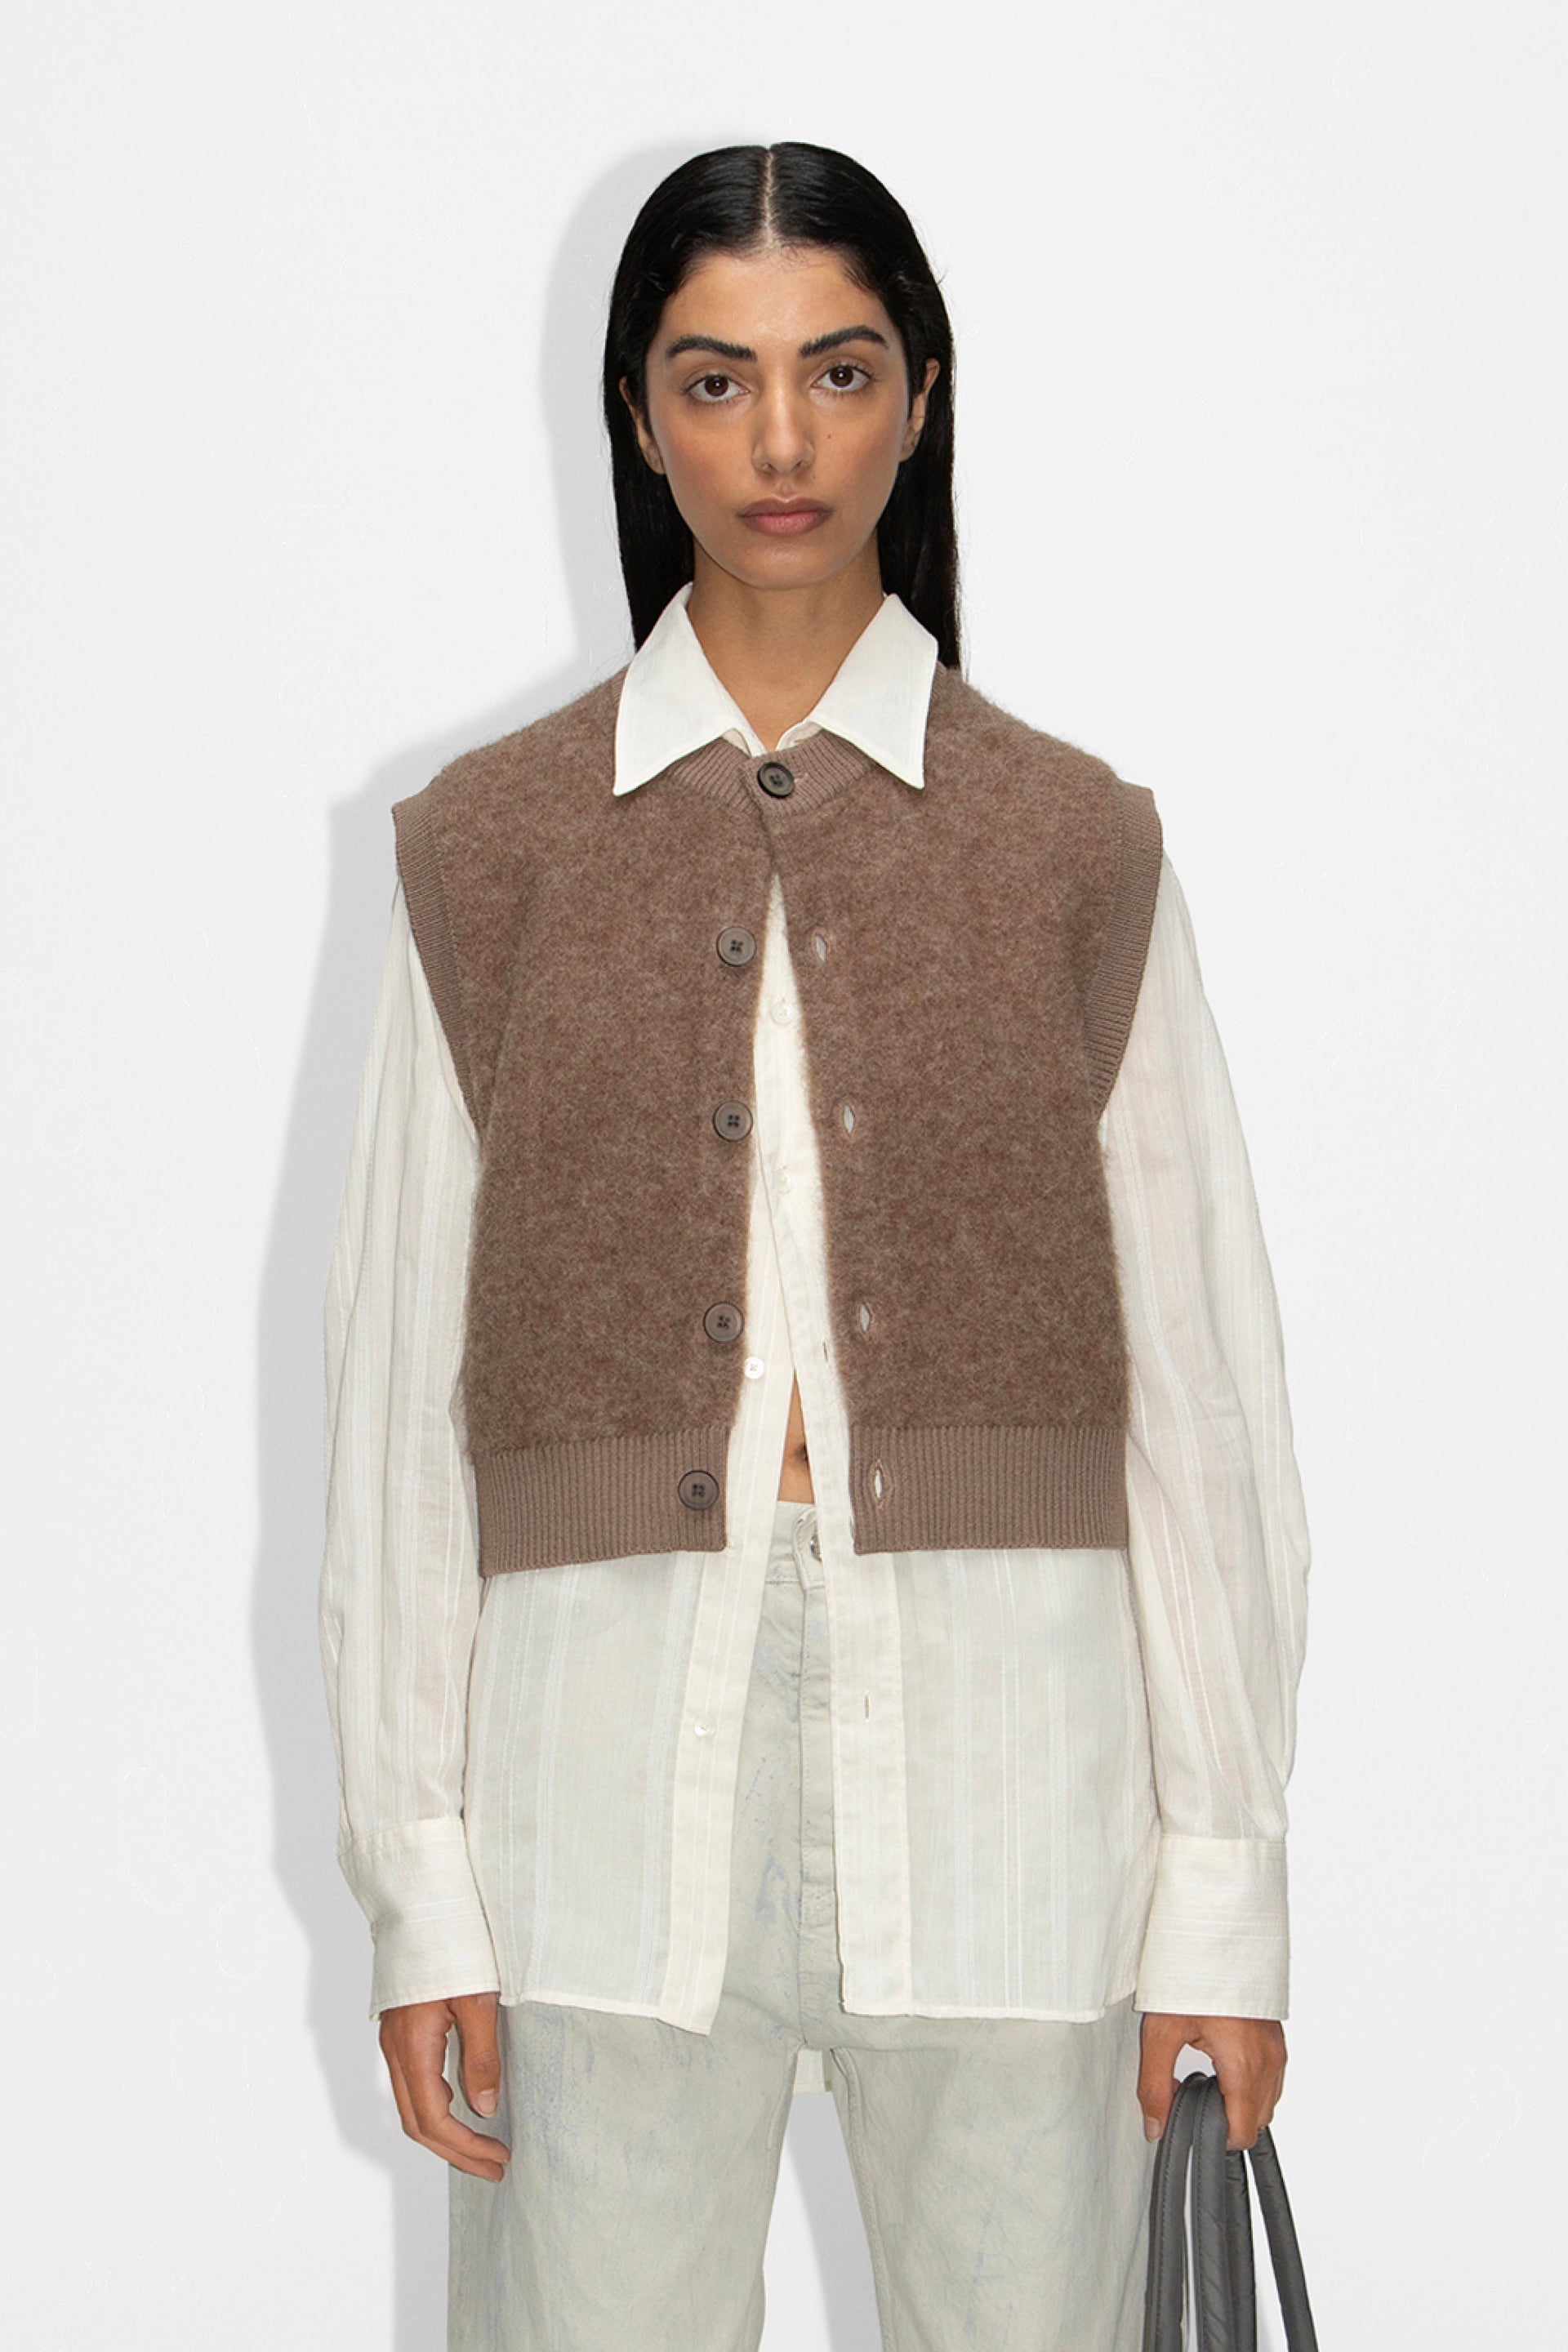 Knitted Alpaca Wool Vest - Study Vest in Beige – HOPE STHLM